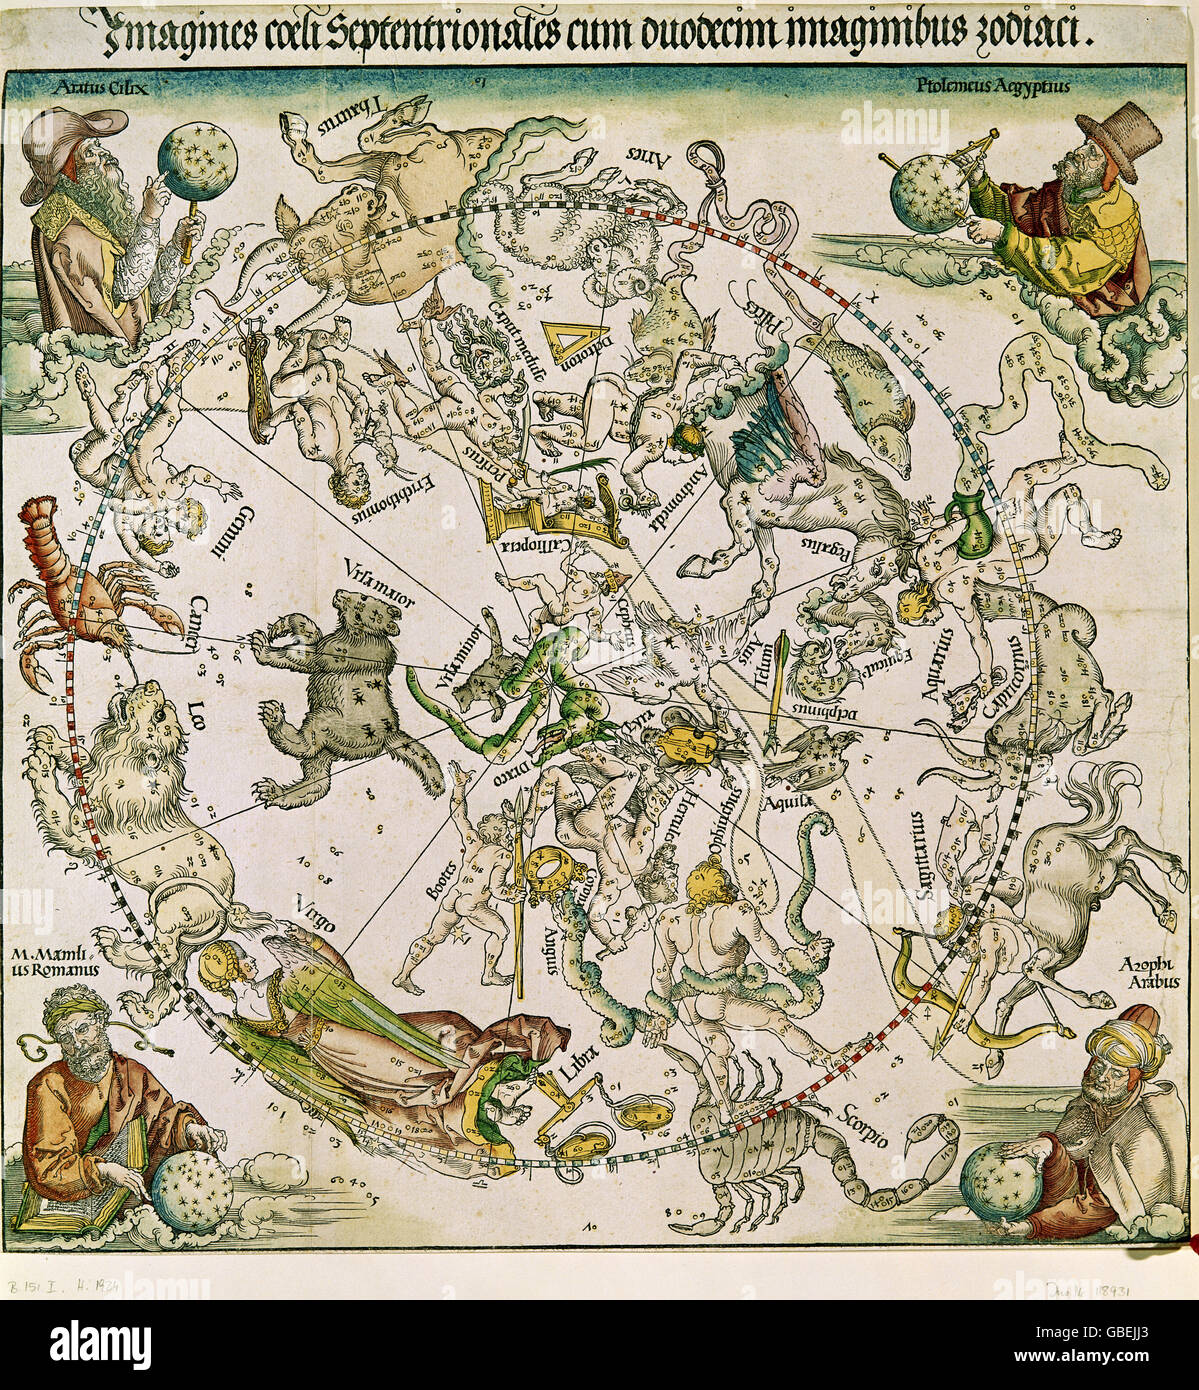 La astronomía, las constelaciones, norte de esfera celeste con imágenes de los astrónomos, grabado en cobre, coloreado por Albrecht Duerer (1471 - 1528), de 1515, la colección estatal de gráfica, Munich, Copyright del artista no ha de ser borrado Foto de stock